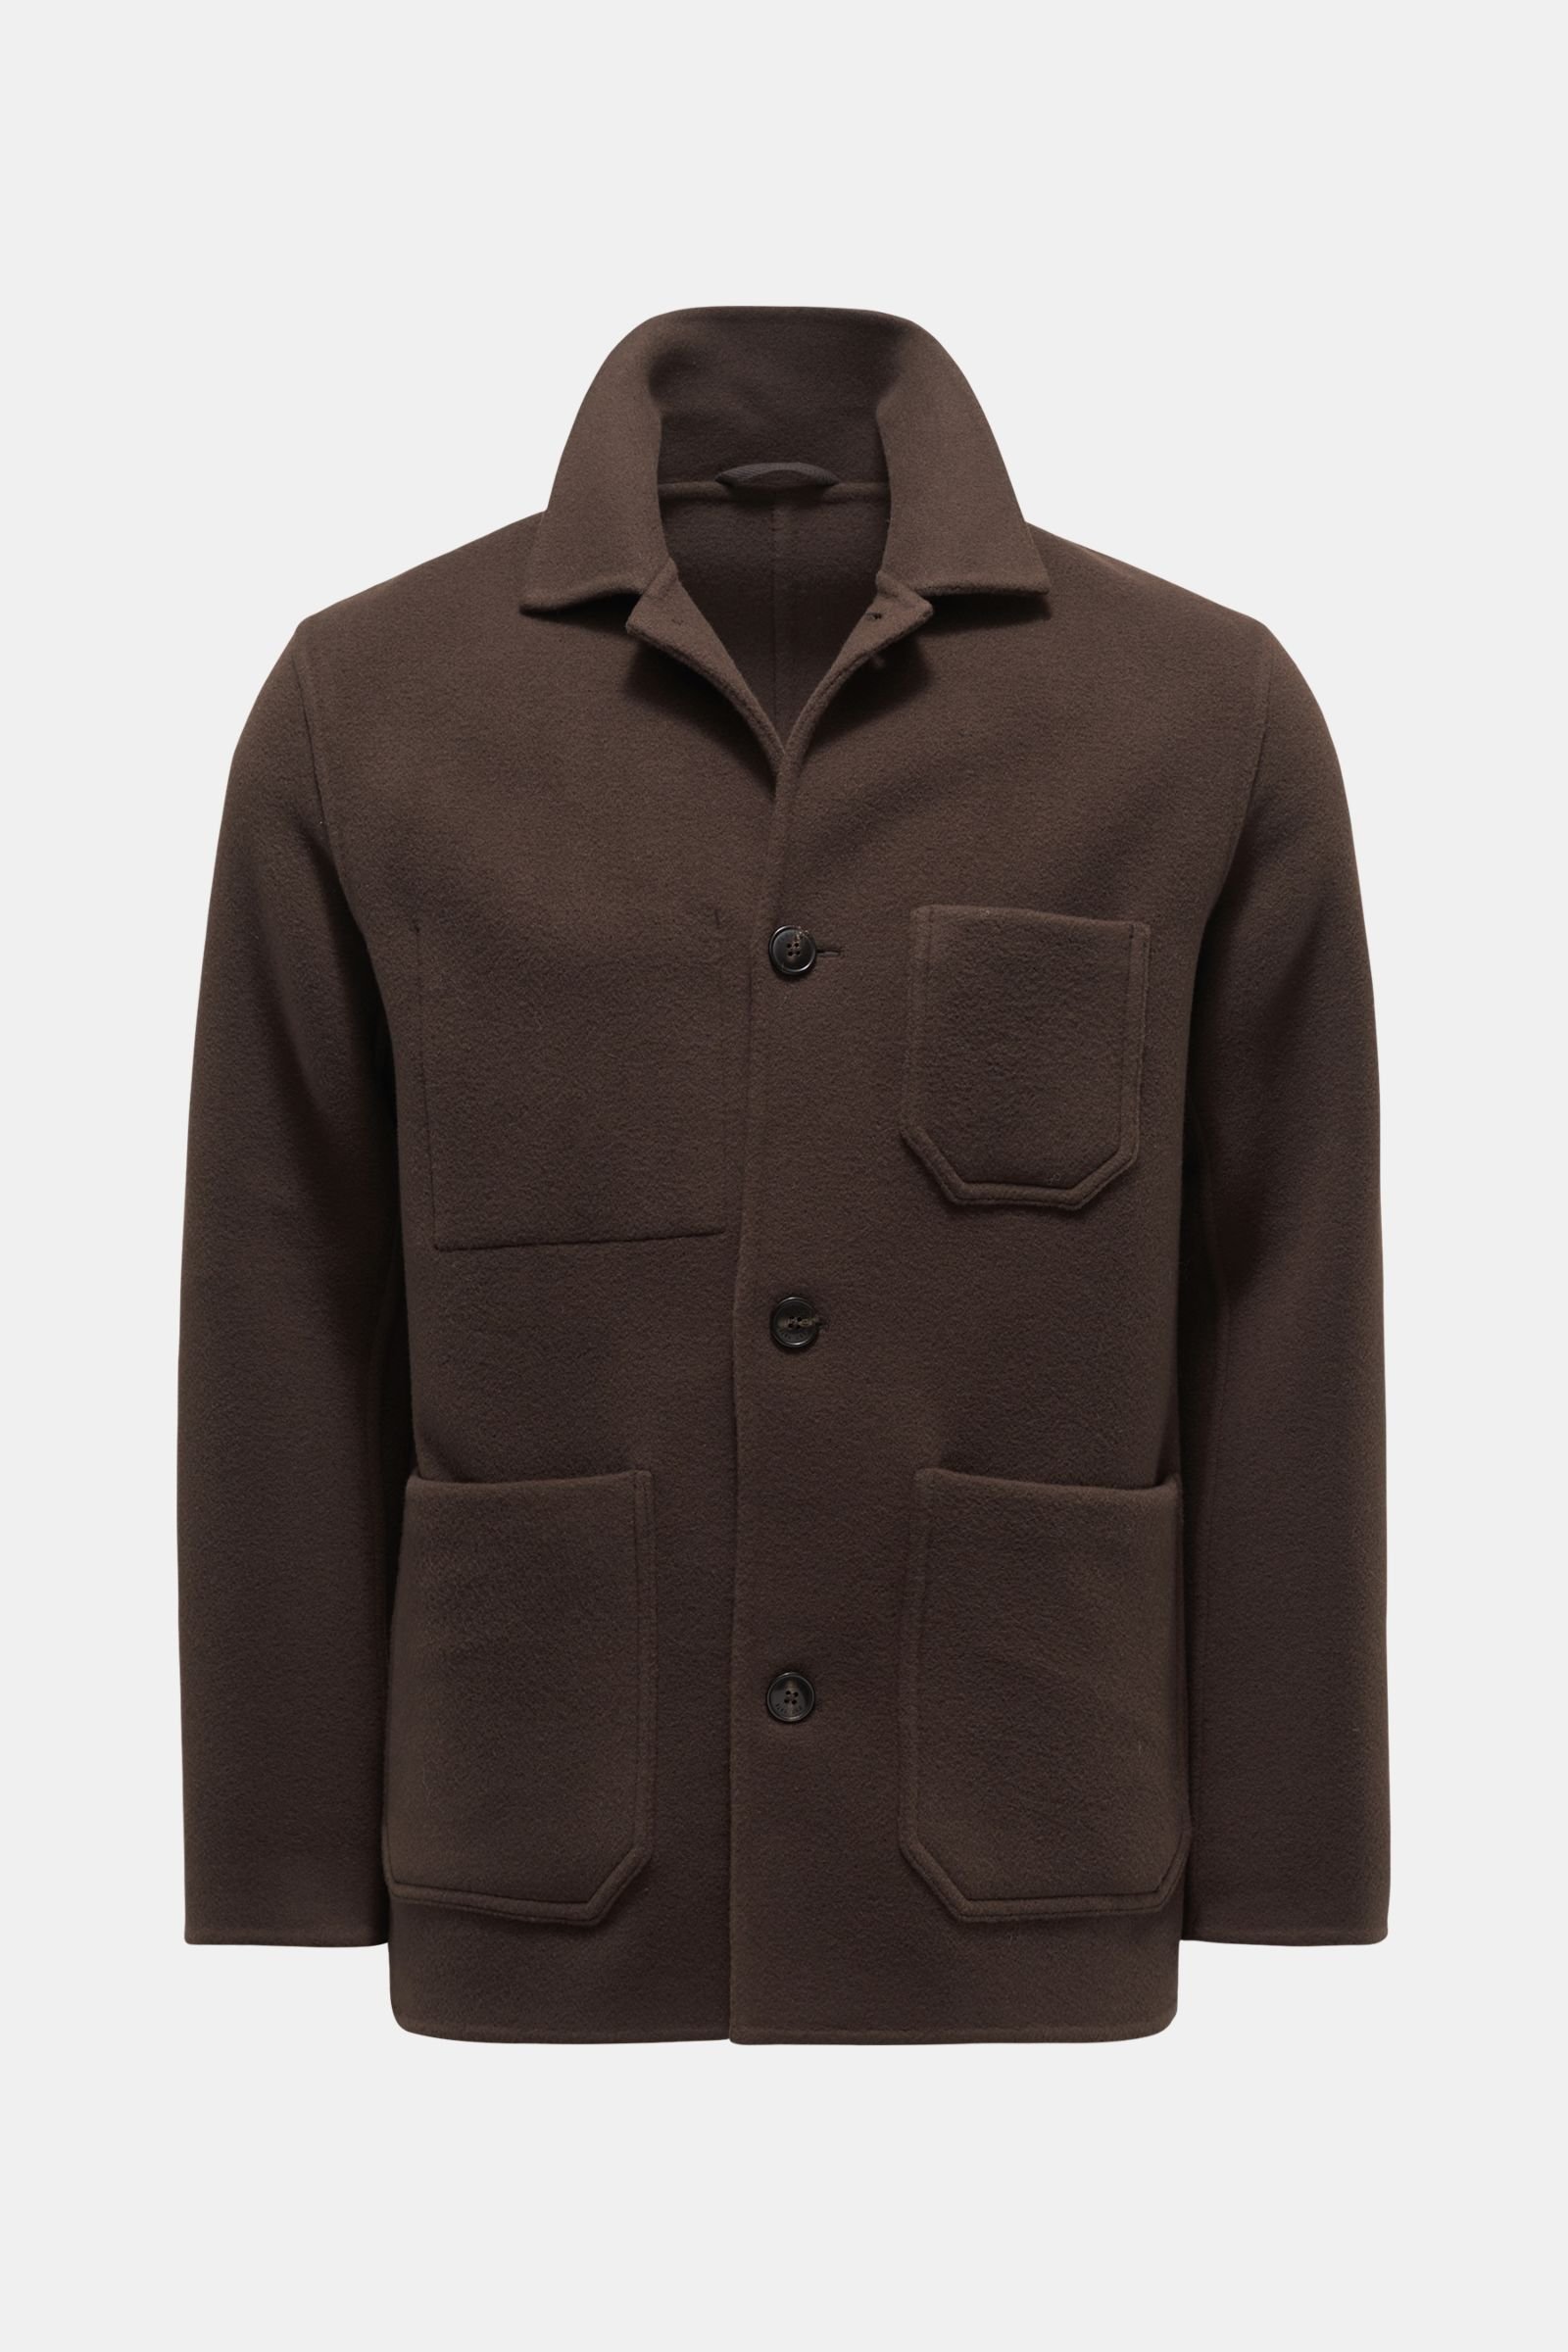 Jacket dark brown